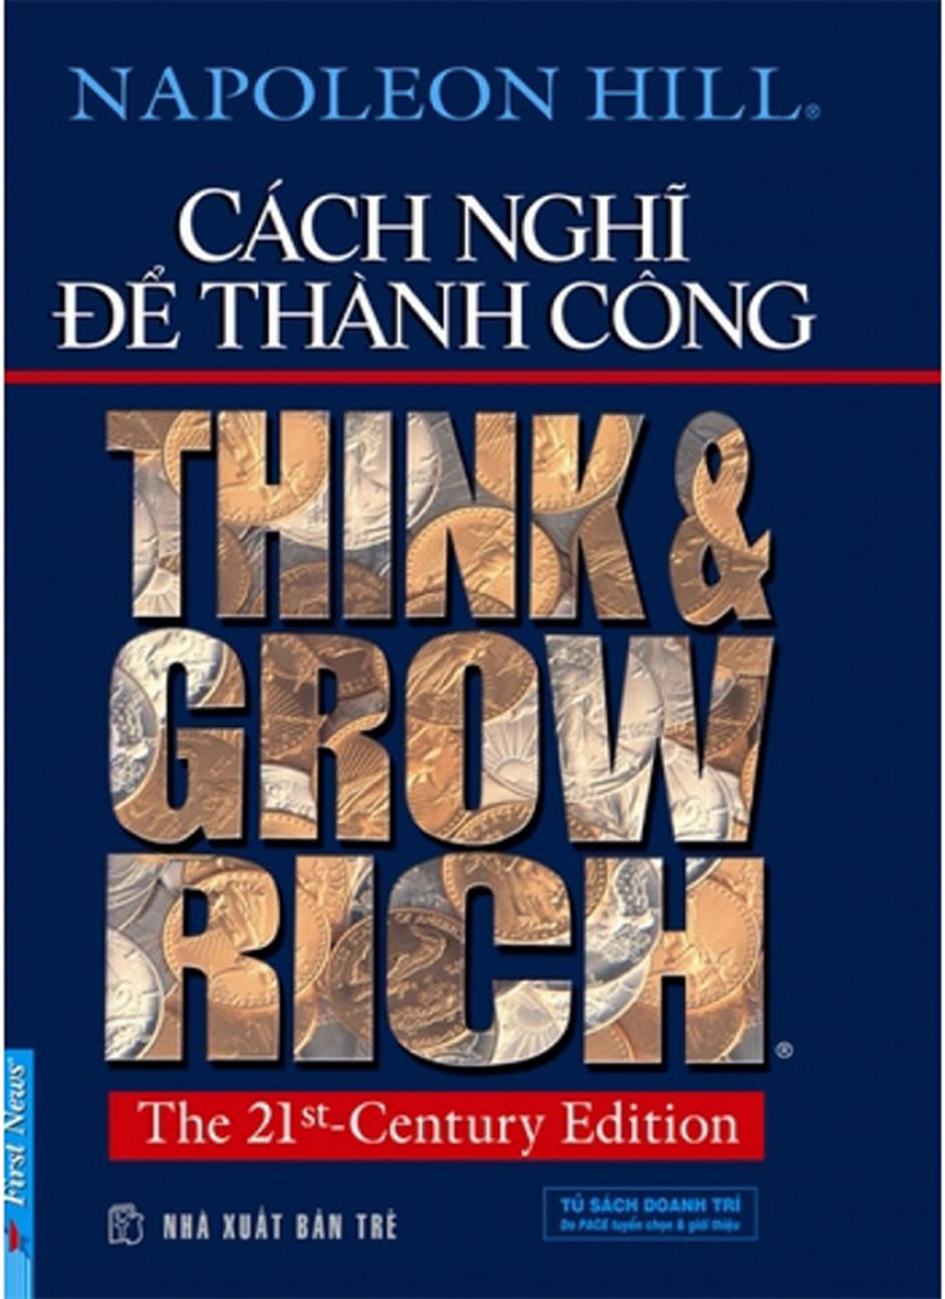 Cach Nghi De Thanh Cong